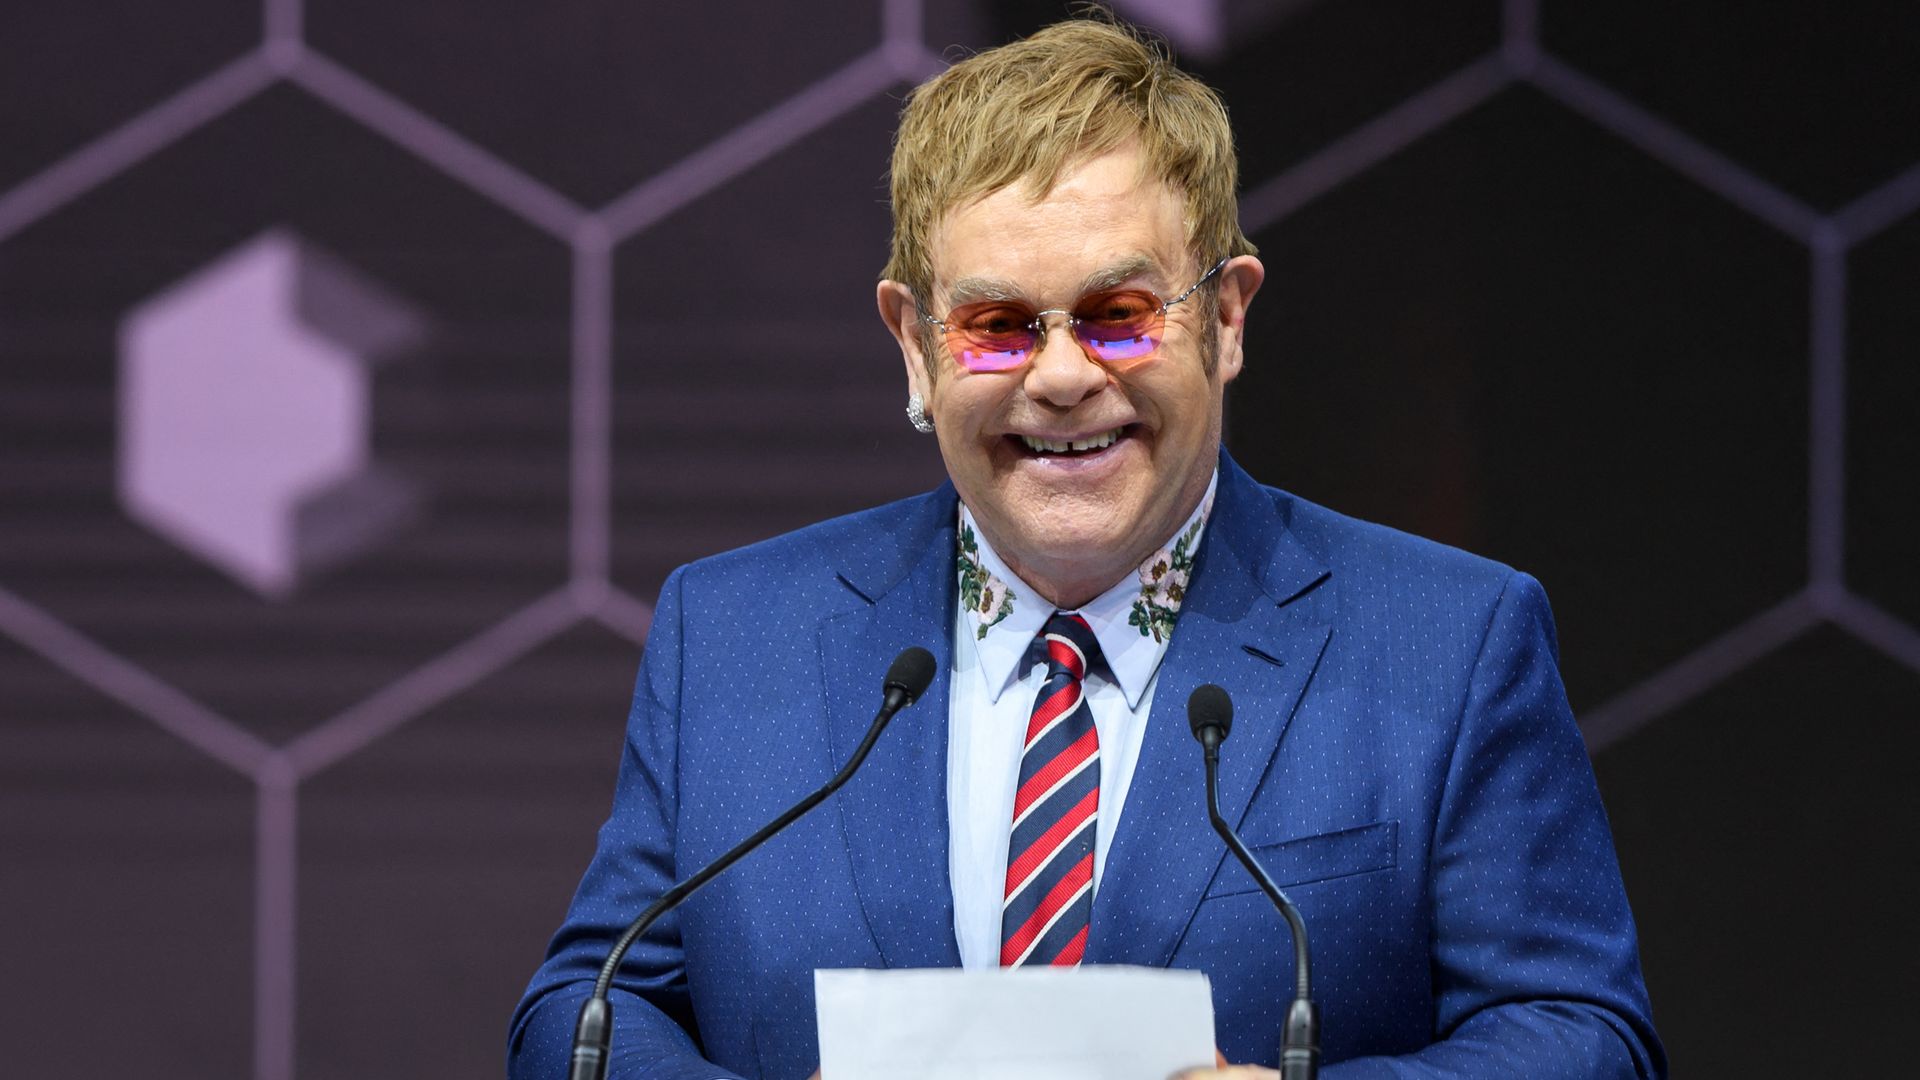 Elton John giving a speech at Davos